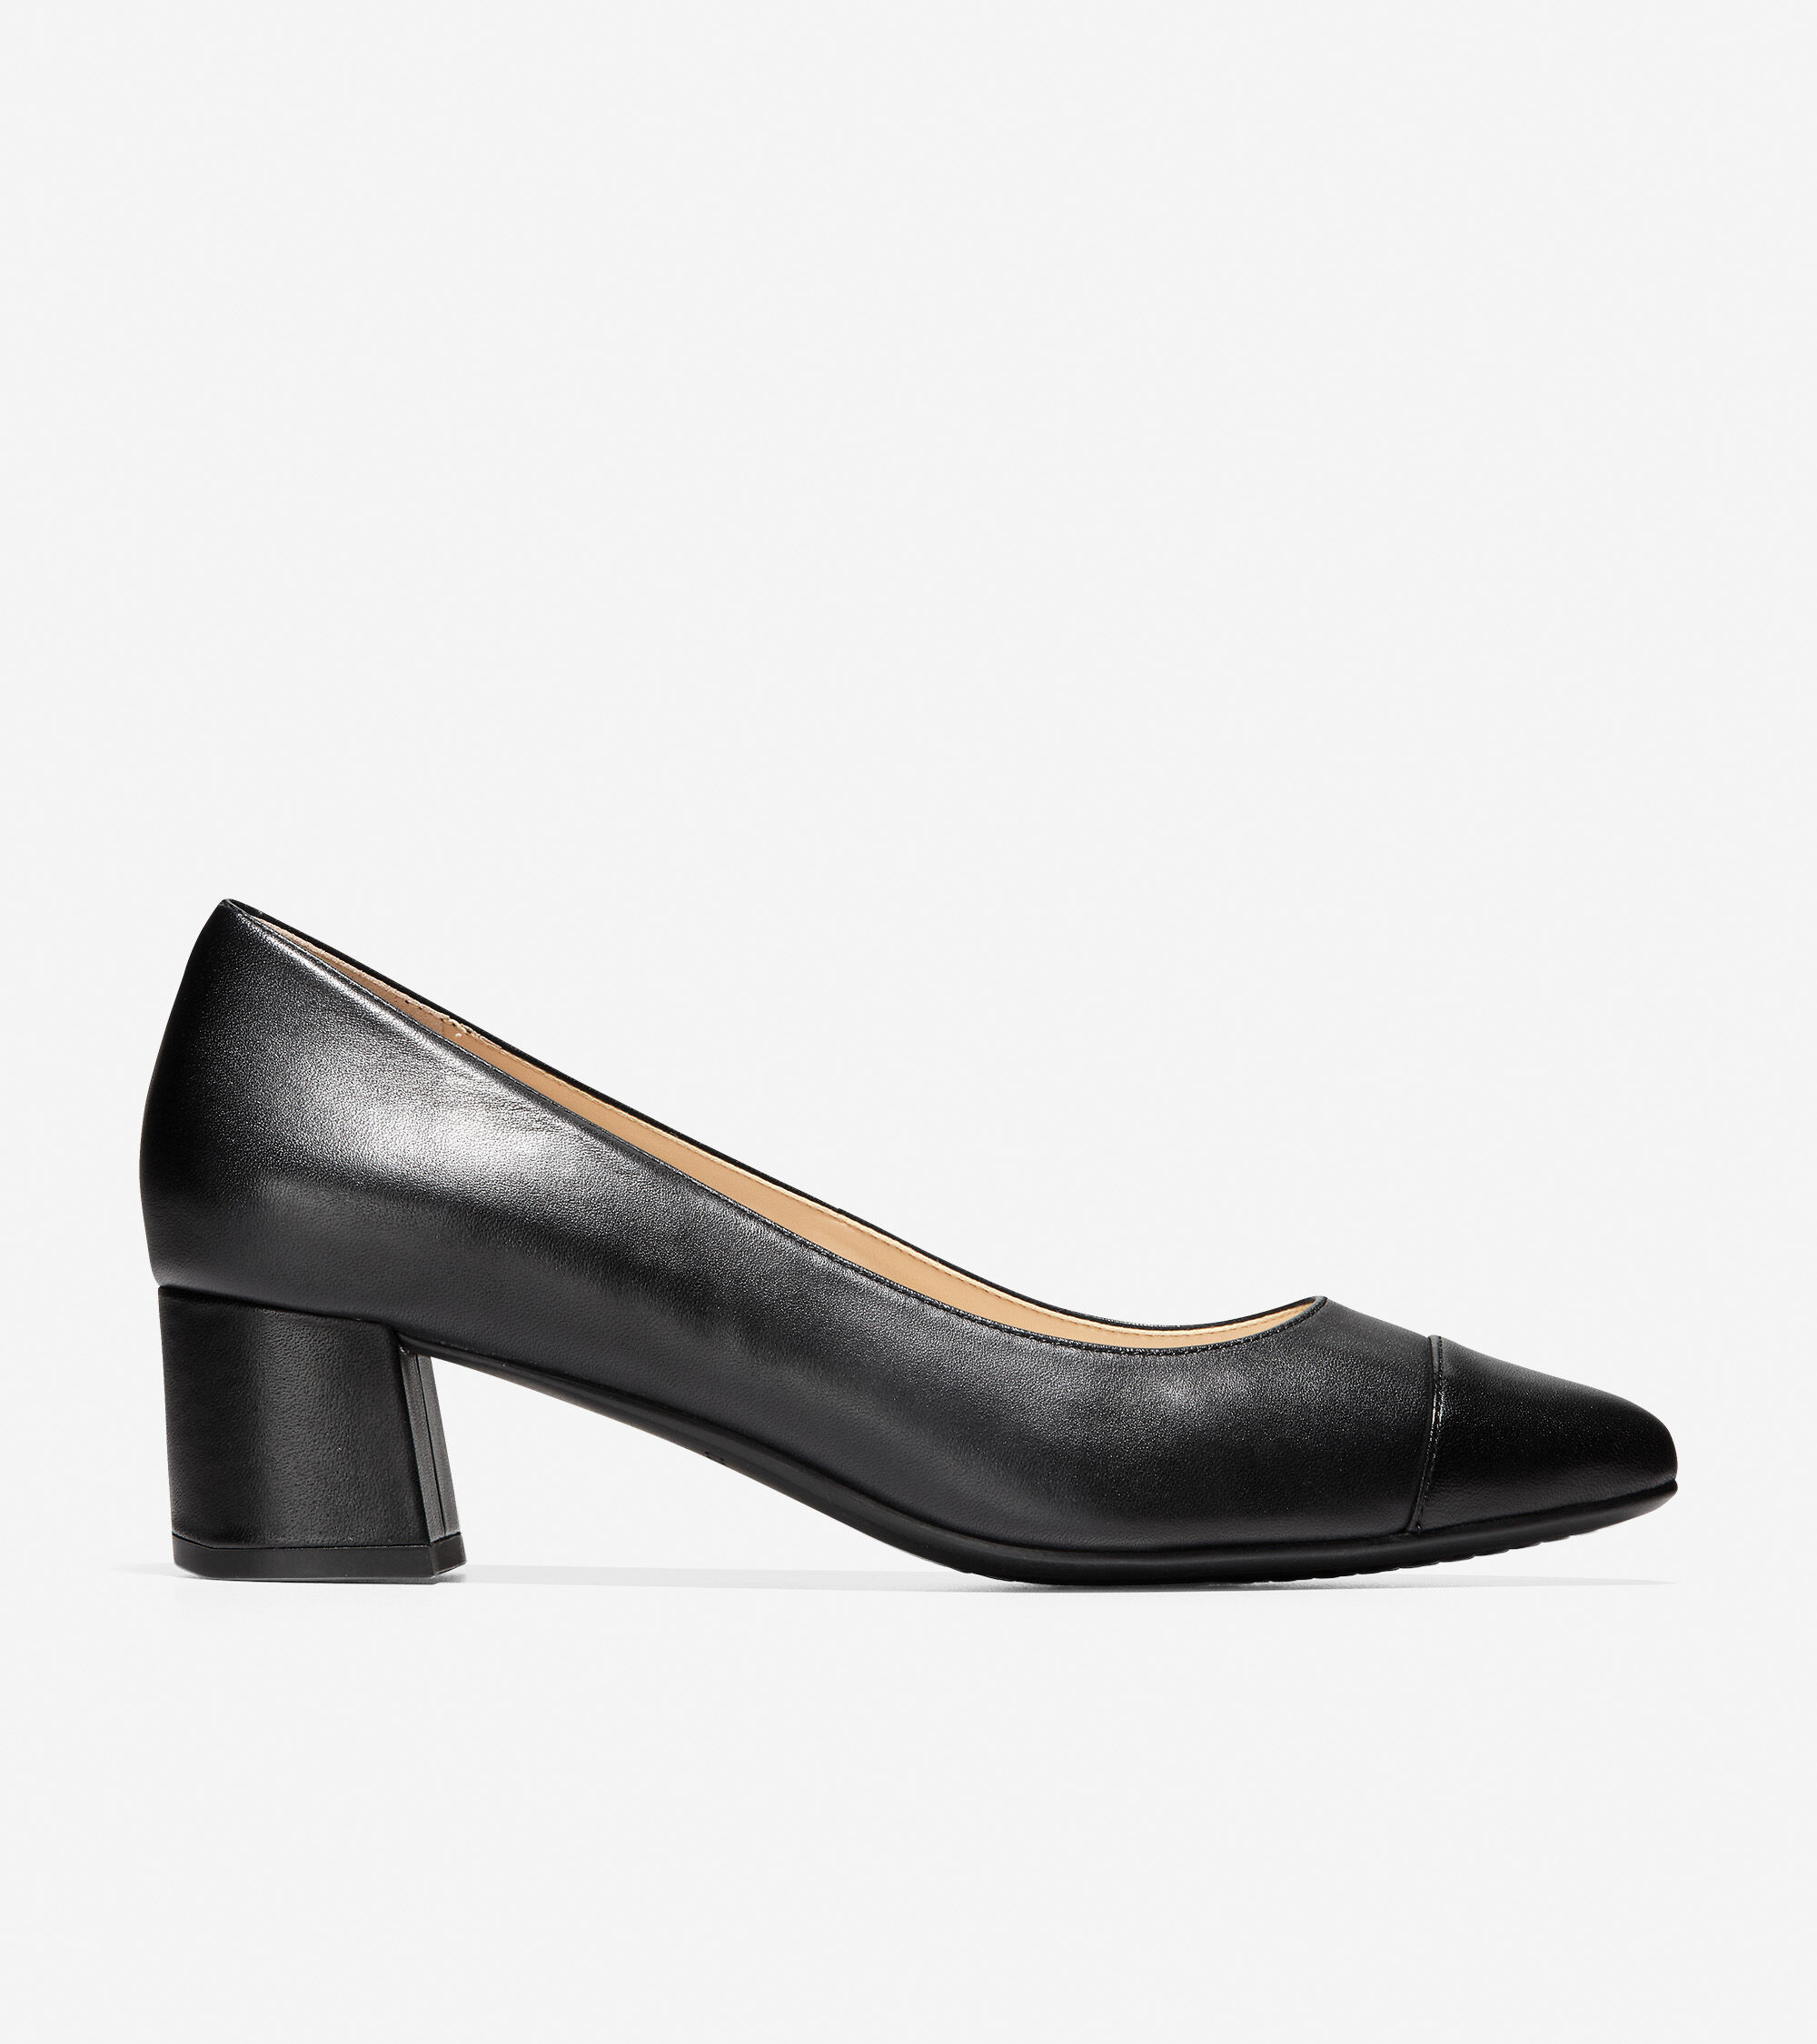 Women's Heels, Pumps \u0026 Wedges | Cole Haan